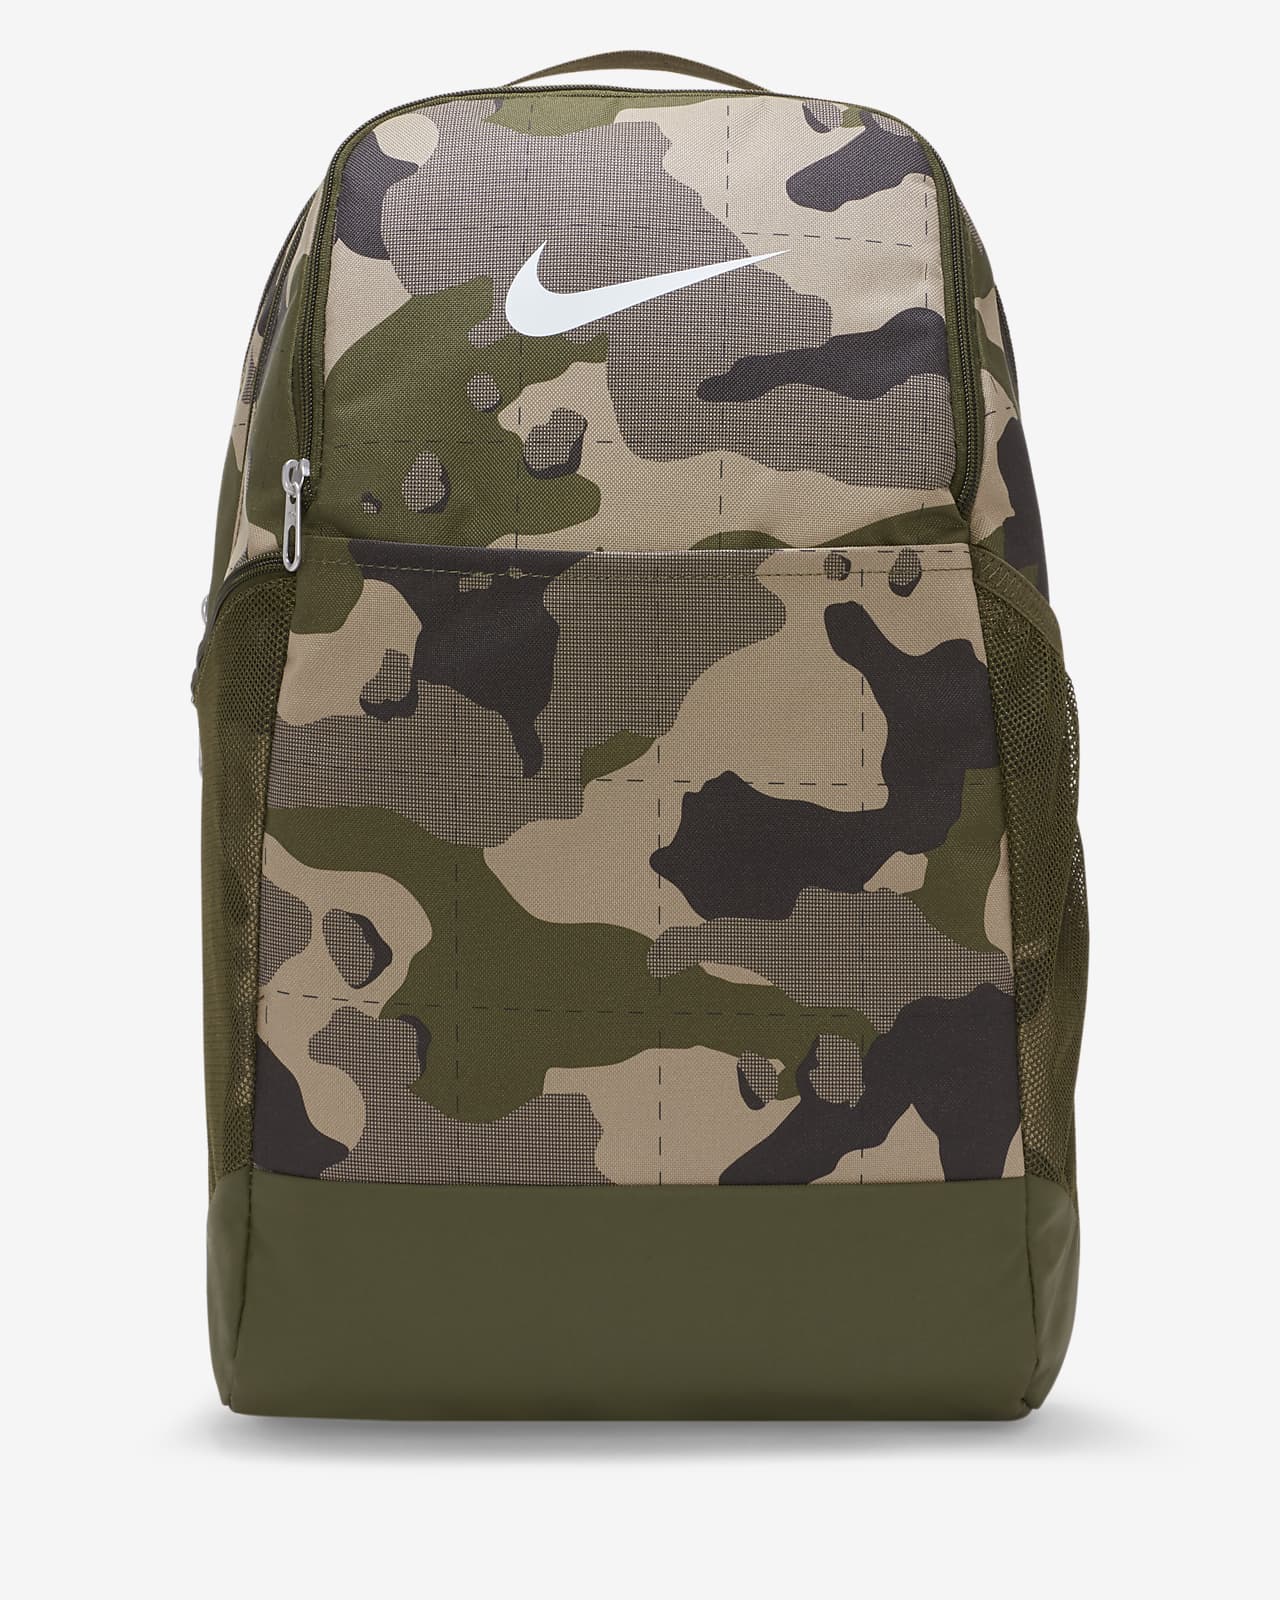 Рюкзак для тренинга с камуфляжным принтом Nike Brasilia (средний размер, 24 л)